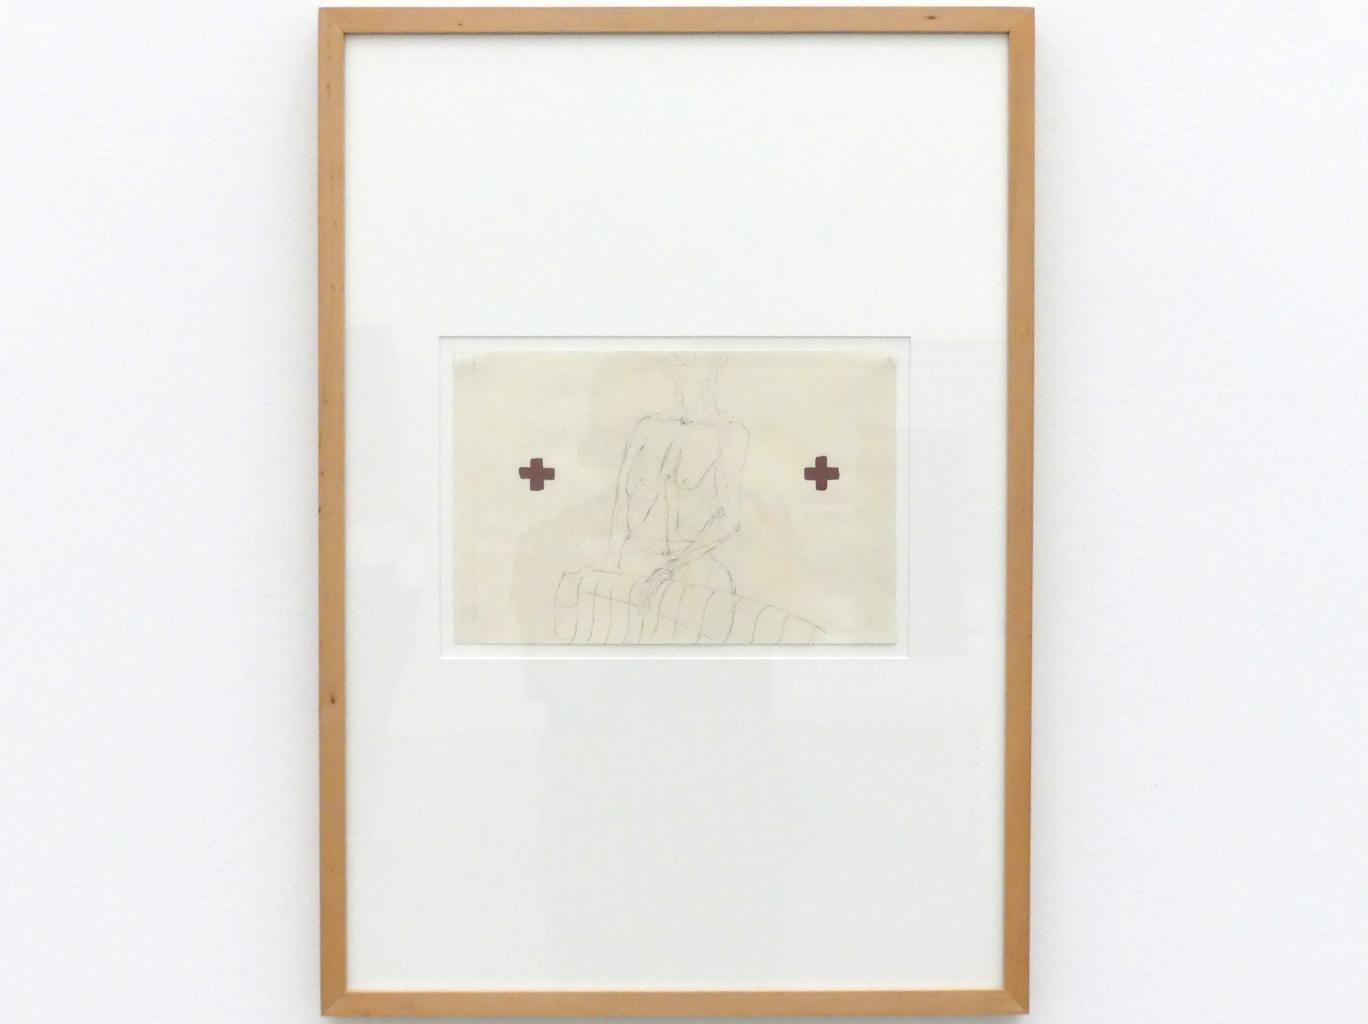 Joseph Beuys (1948–1985), unbetitelt, München, Pinakothek der Moderne, Saal 18, 1956